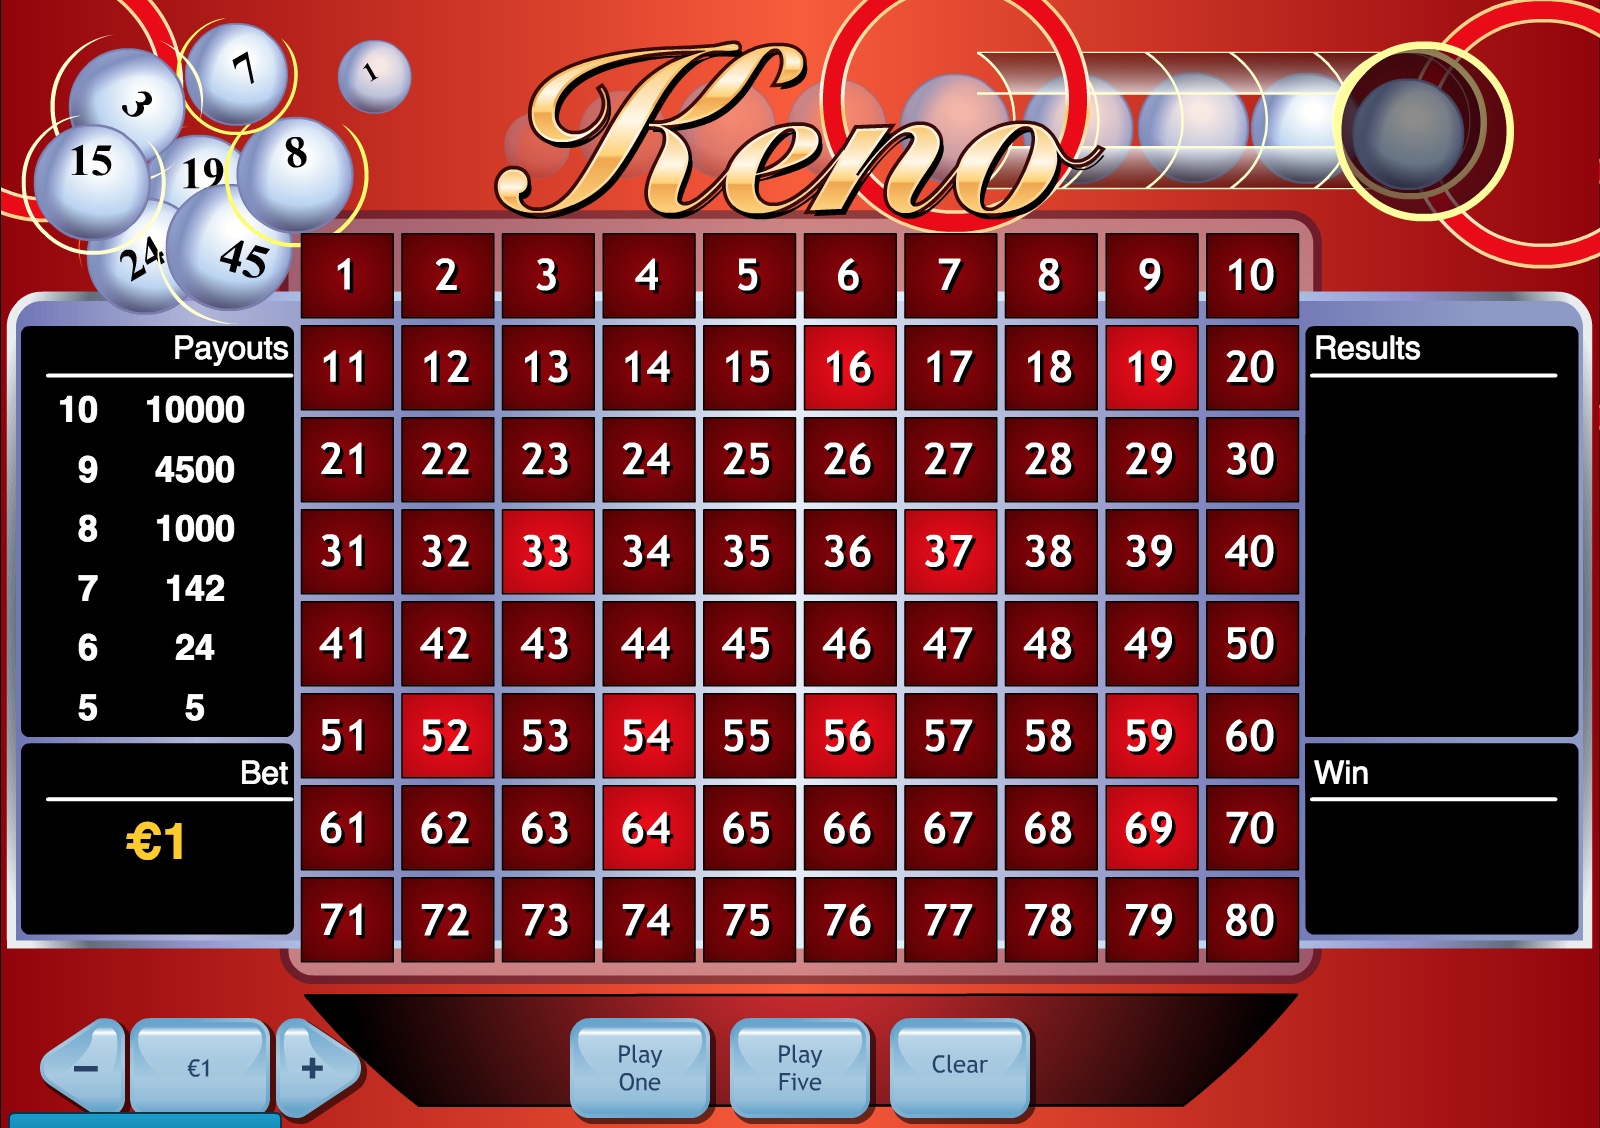 keno-history-rules-variations-top-casinos-smartcasinoguide